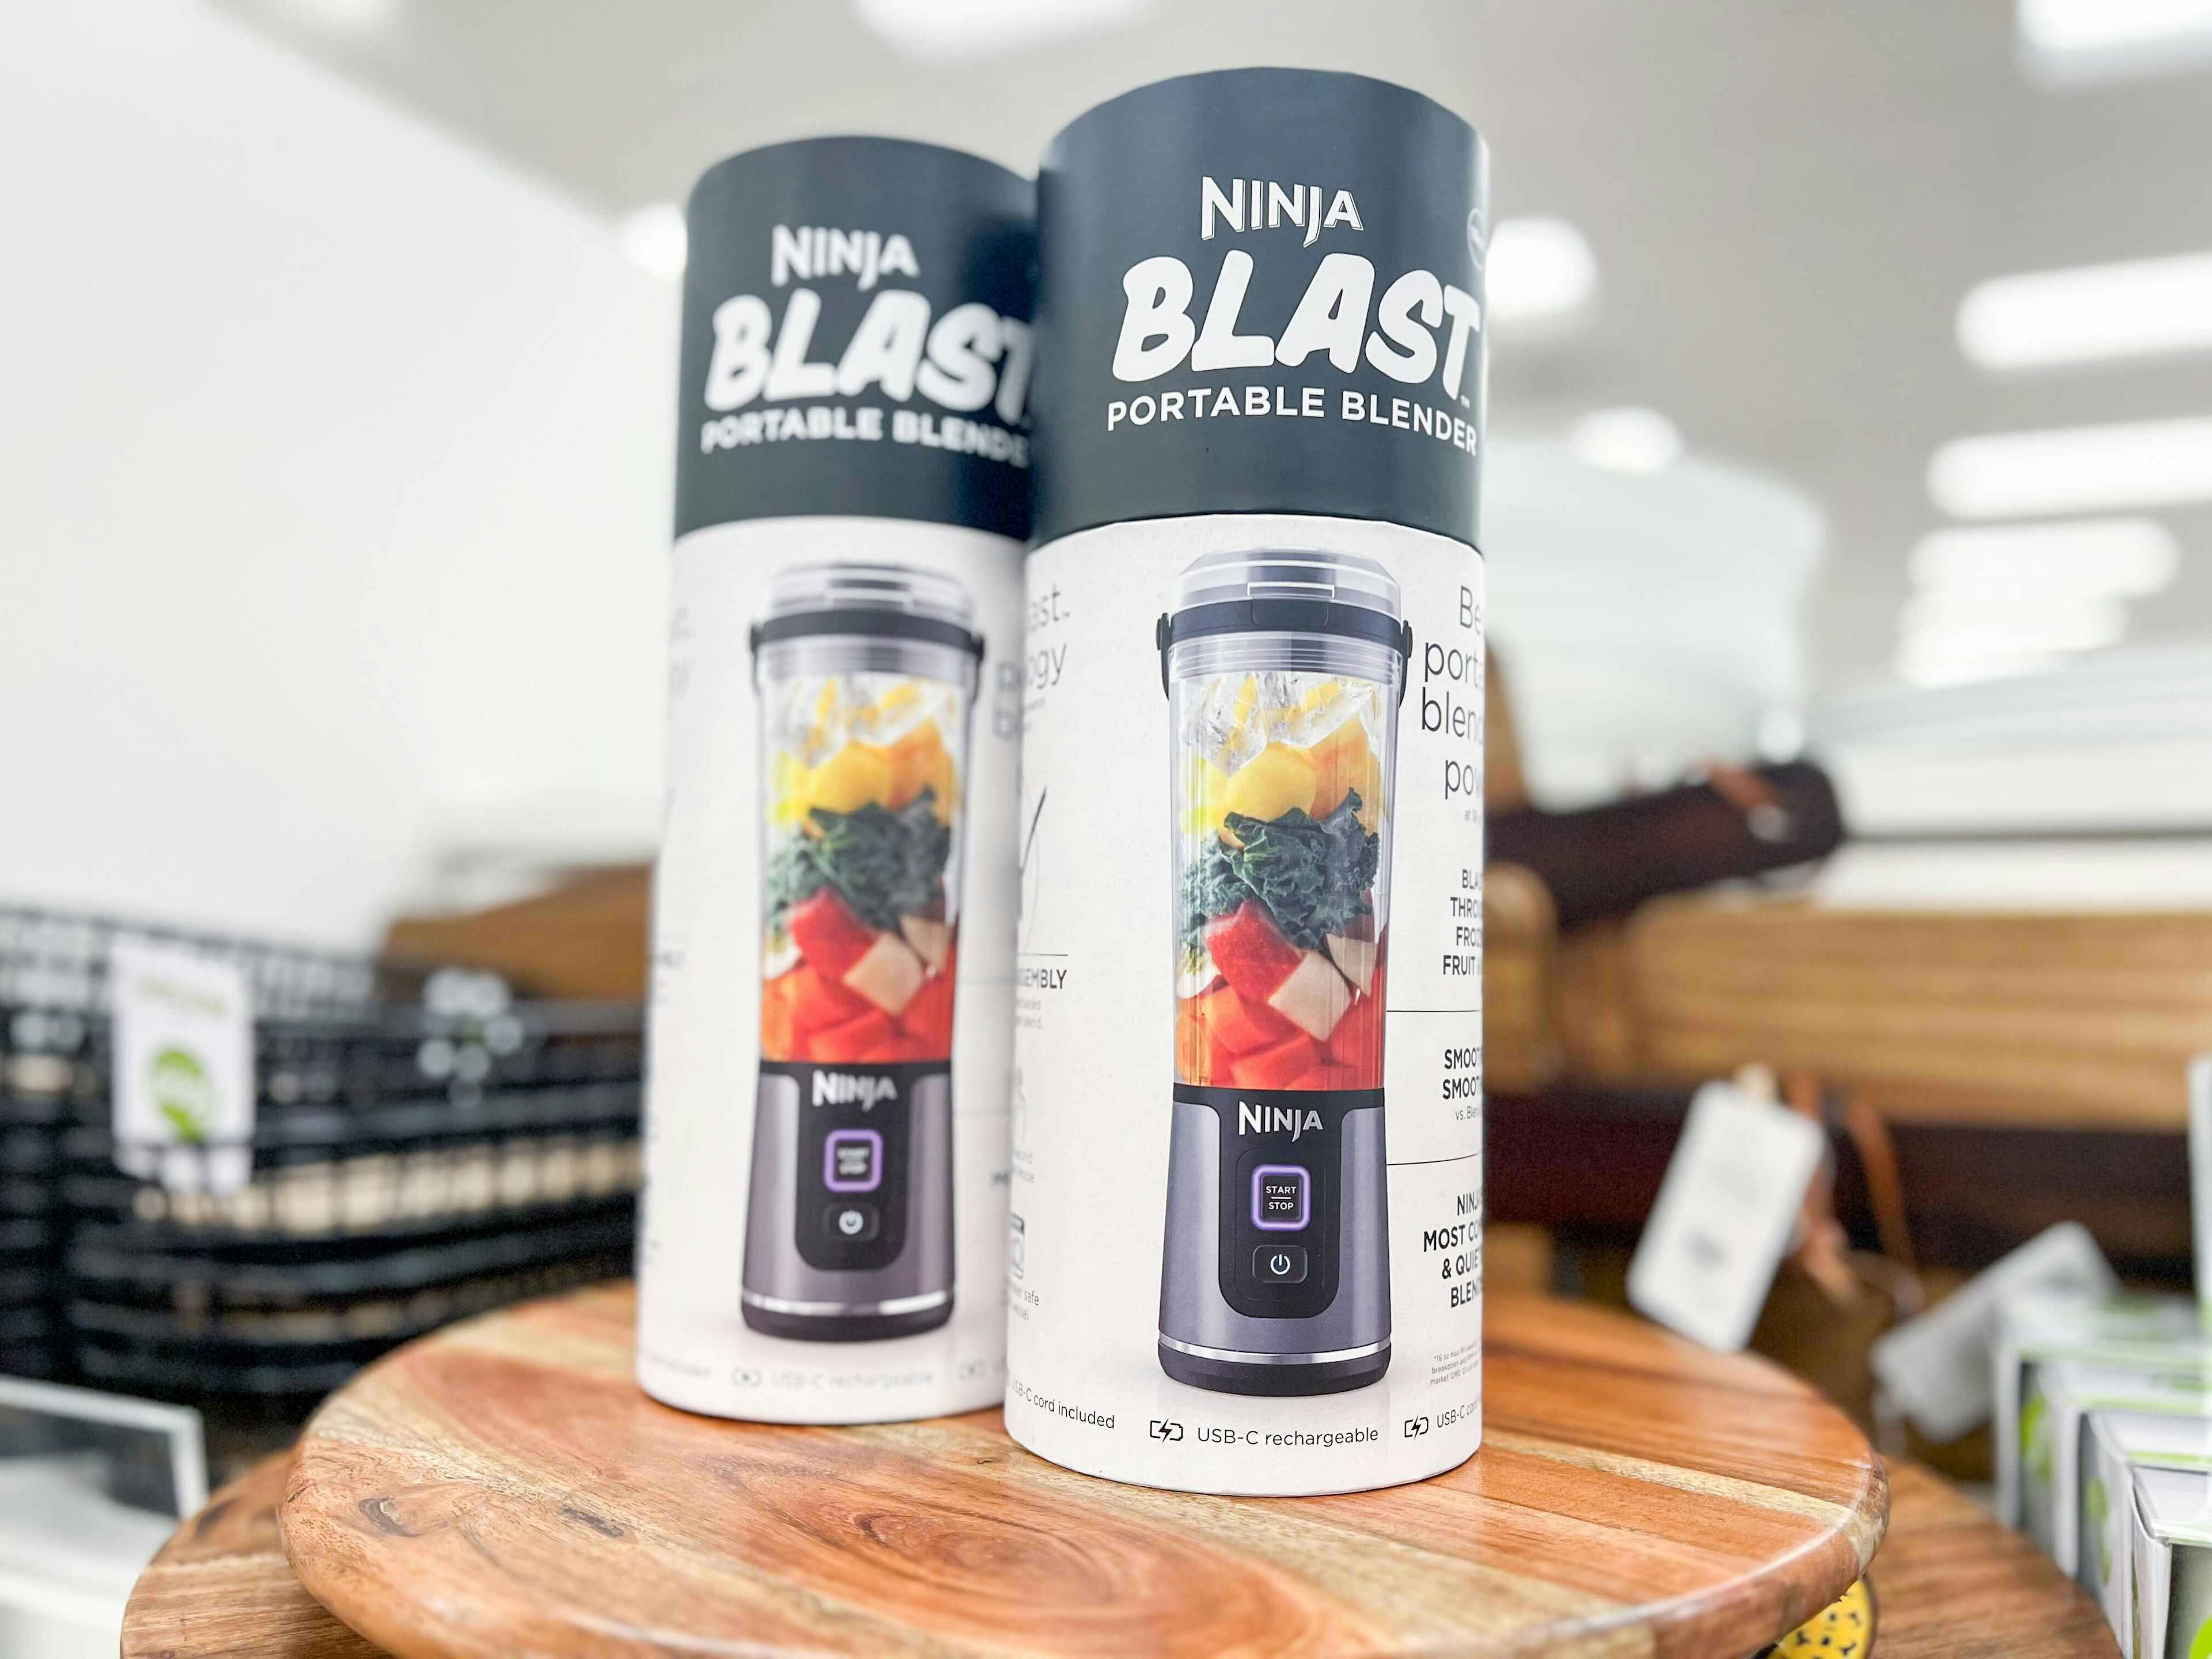 kohls ninja blast portable blender in store 9072 jpg